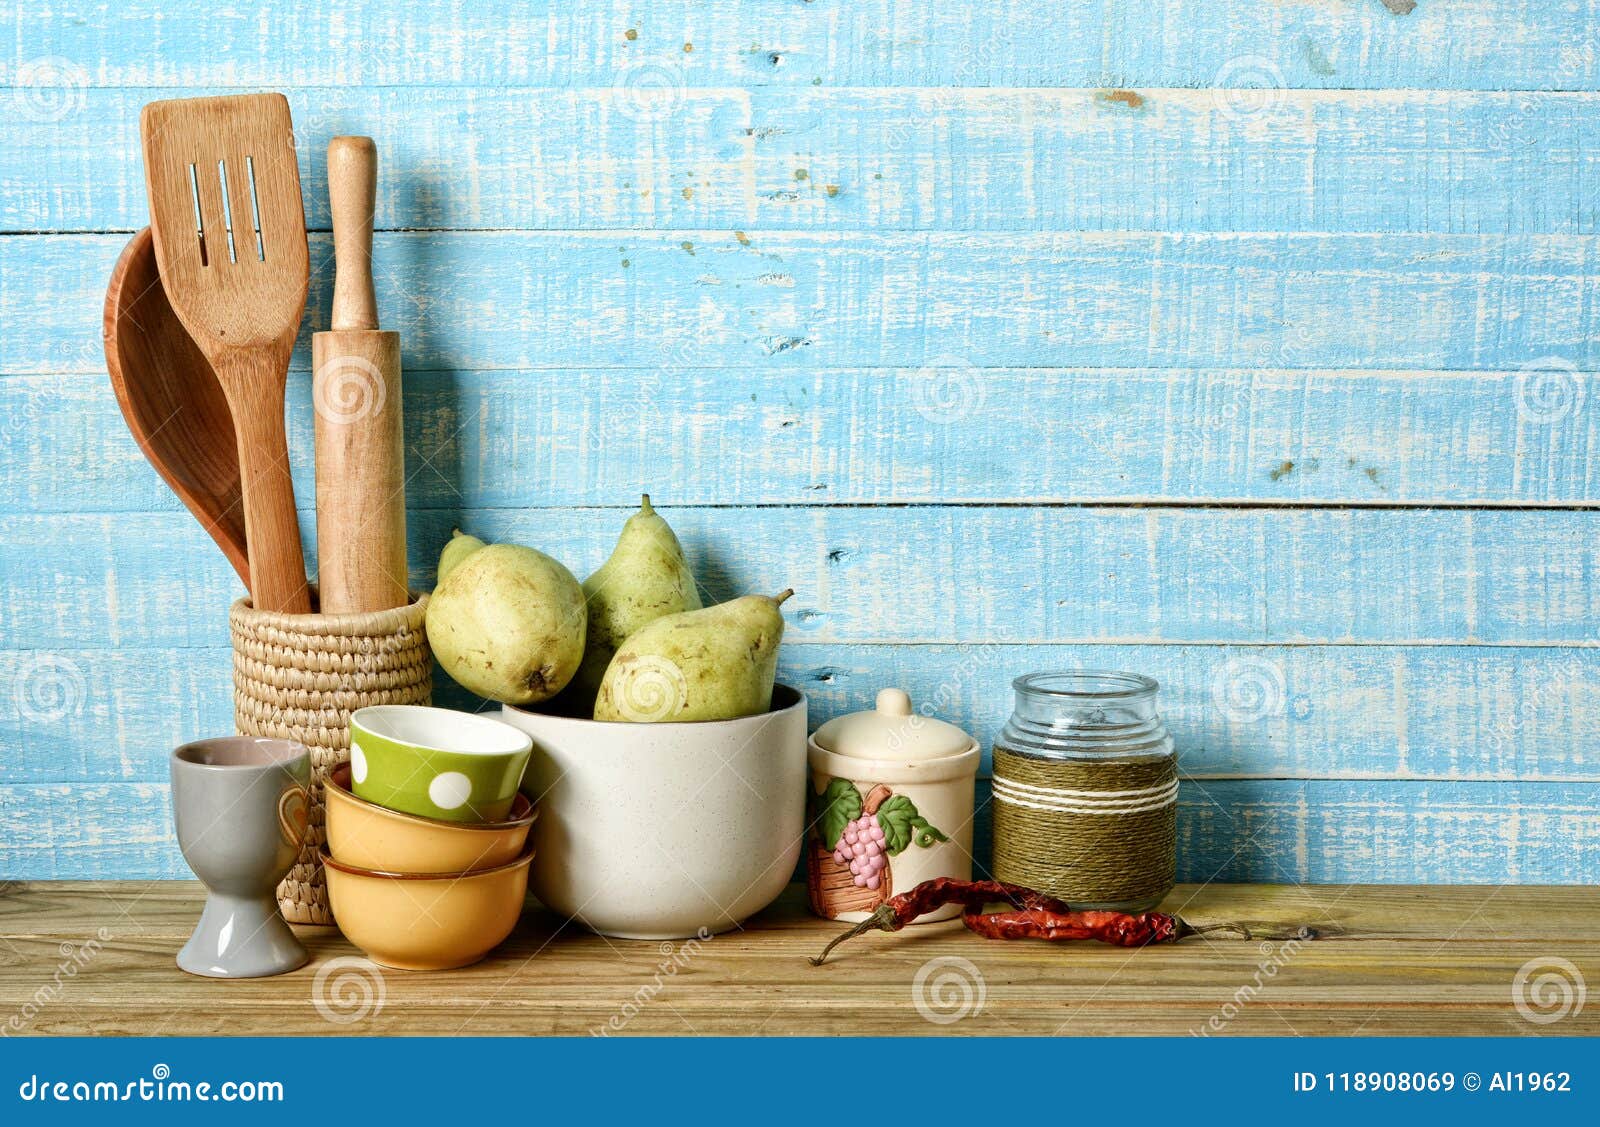 Cùng khám phá những công cụ nhà bếp trên nền xanh nhạt giúp bạn tạo cảm giác dễ chịu và thư thái cho ngôi nhà của bạn. Tóm tắt các thiết kế hợp lý, đồng thời mang lại cho bạn sự linh hoạt và dễ dàng trong việc sử dụng các dụng cụ bếp.